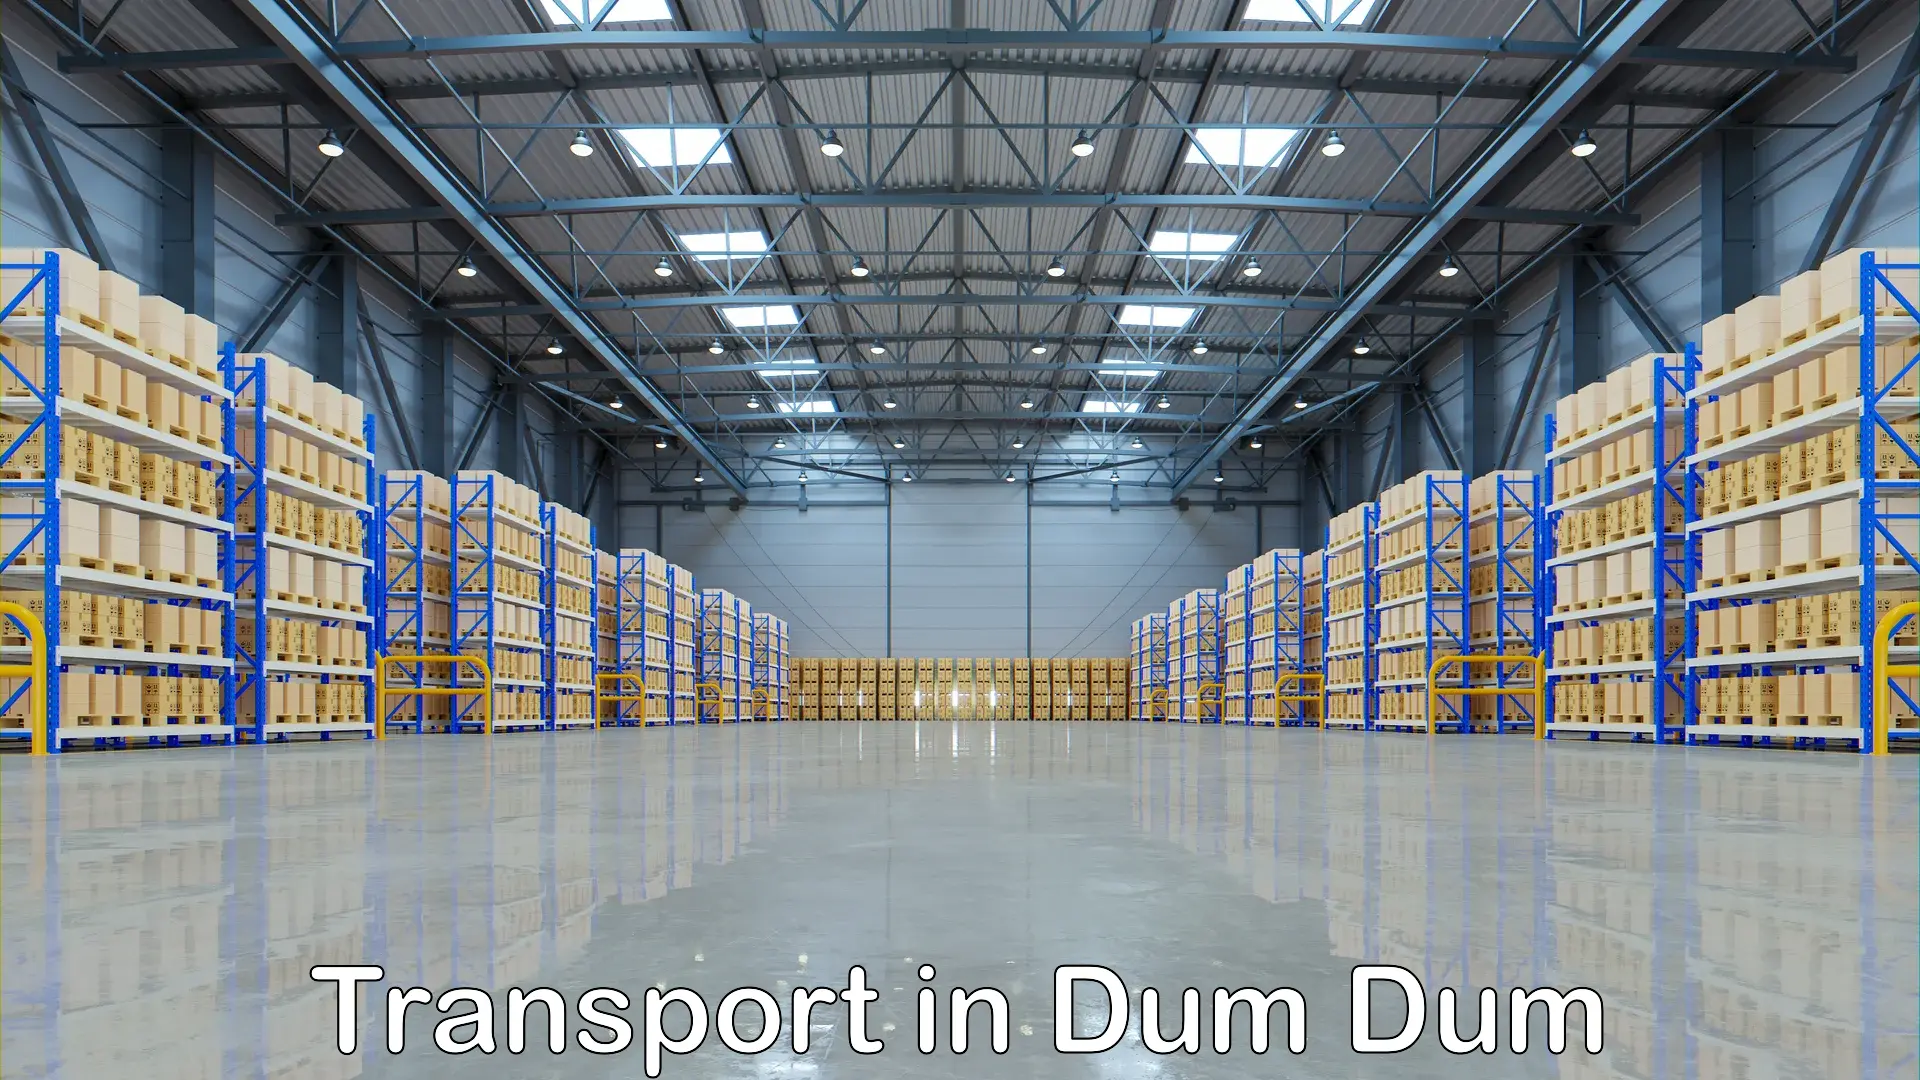 Online transport booking in Dum Dum